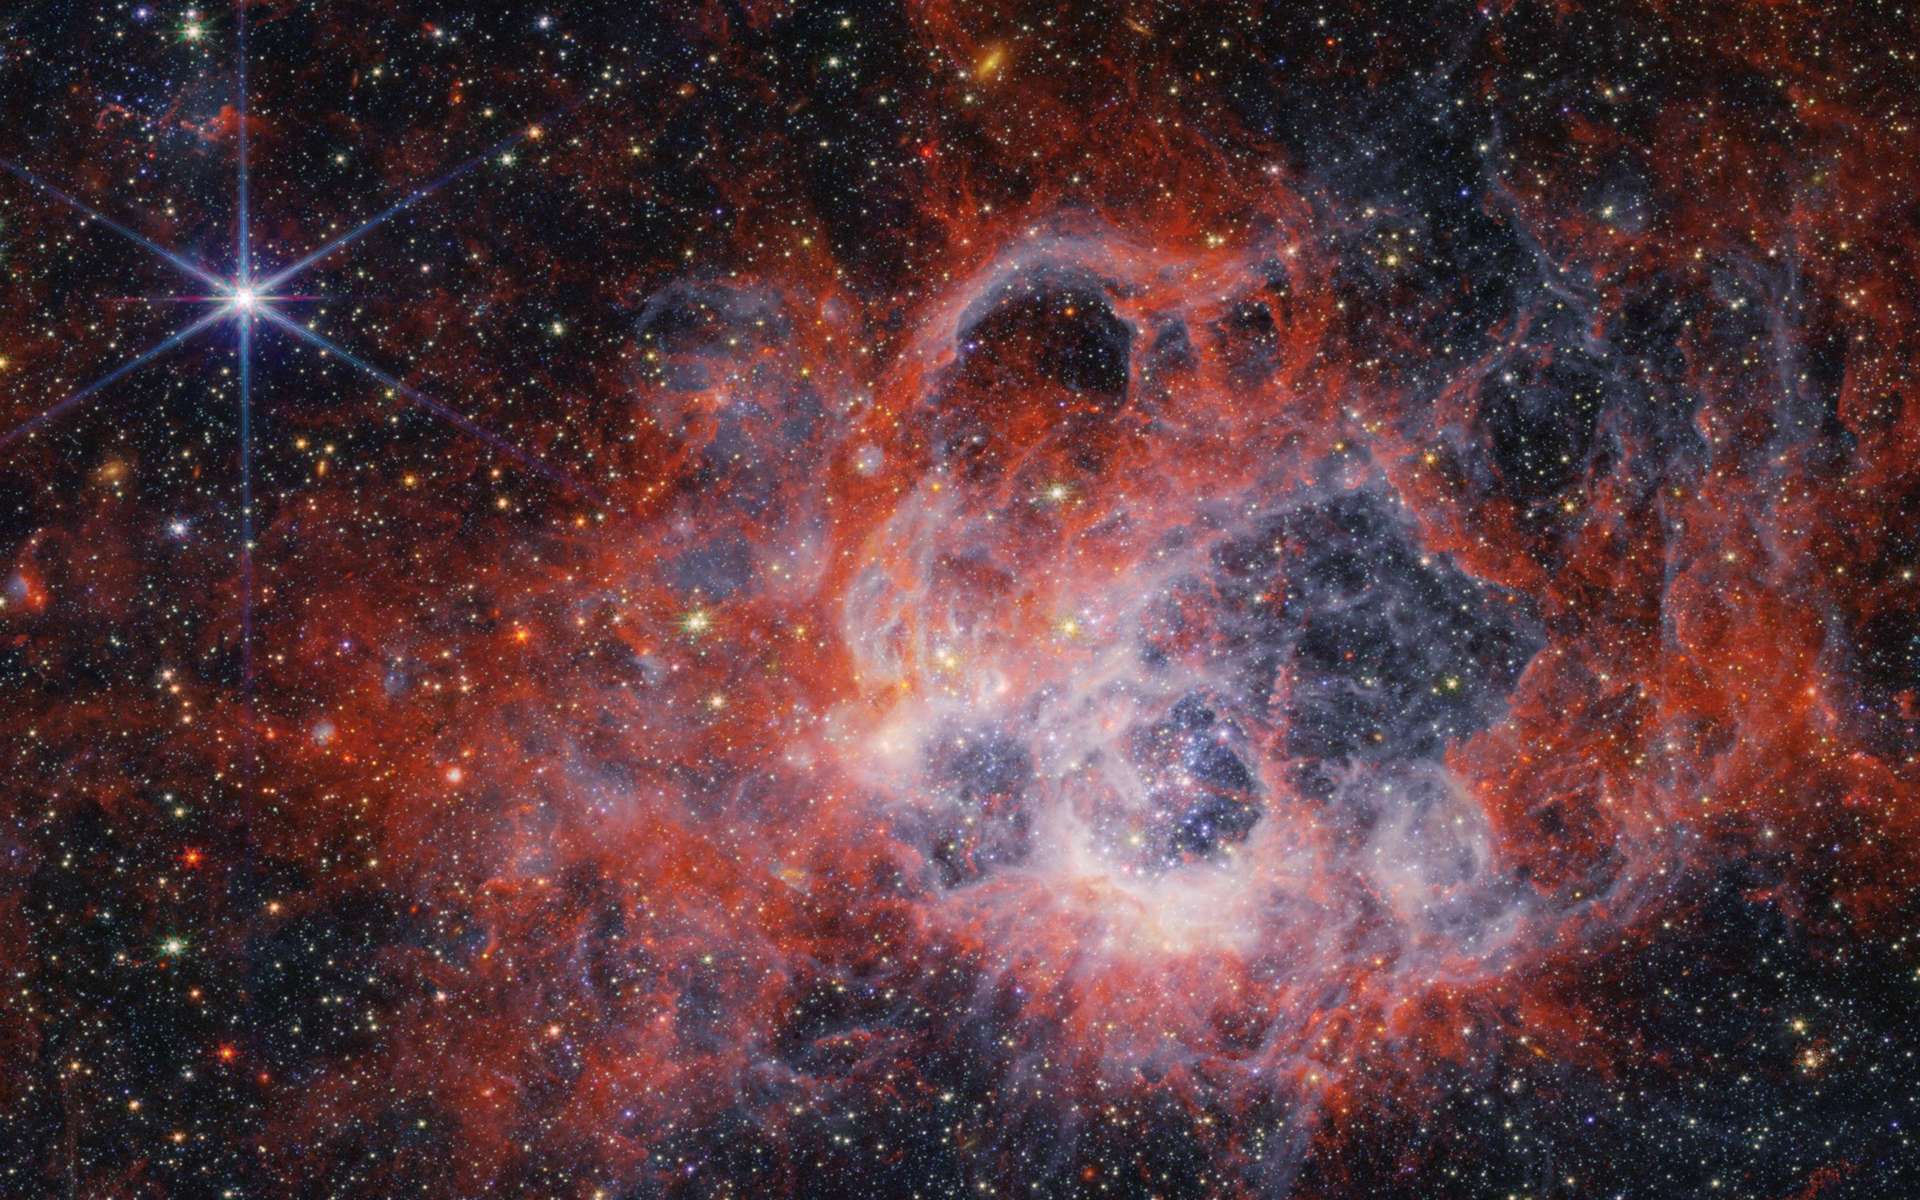 Le James-Webb révèle de somptueuses images de la nébuleuse du Triangle, une nurserie stellaire